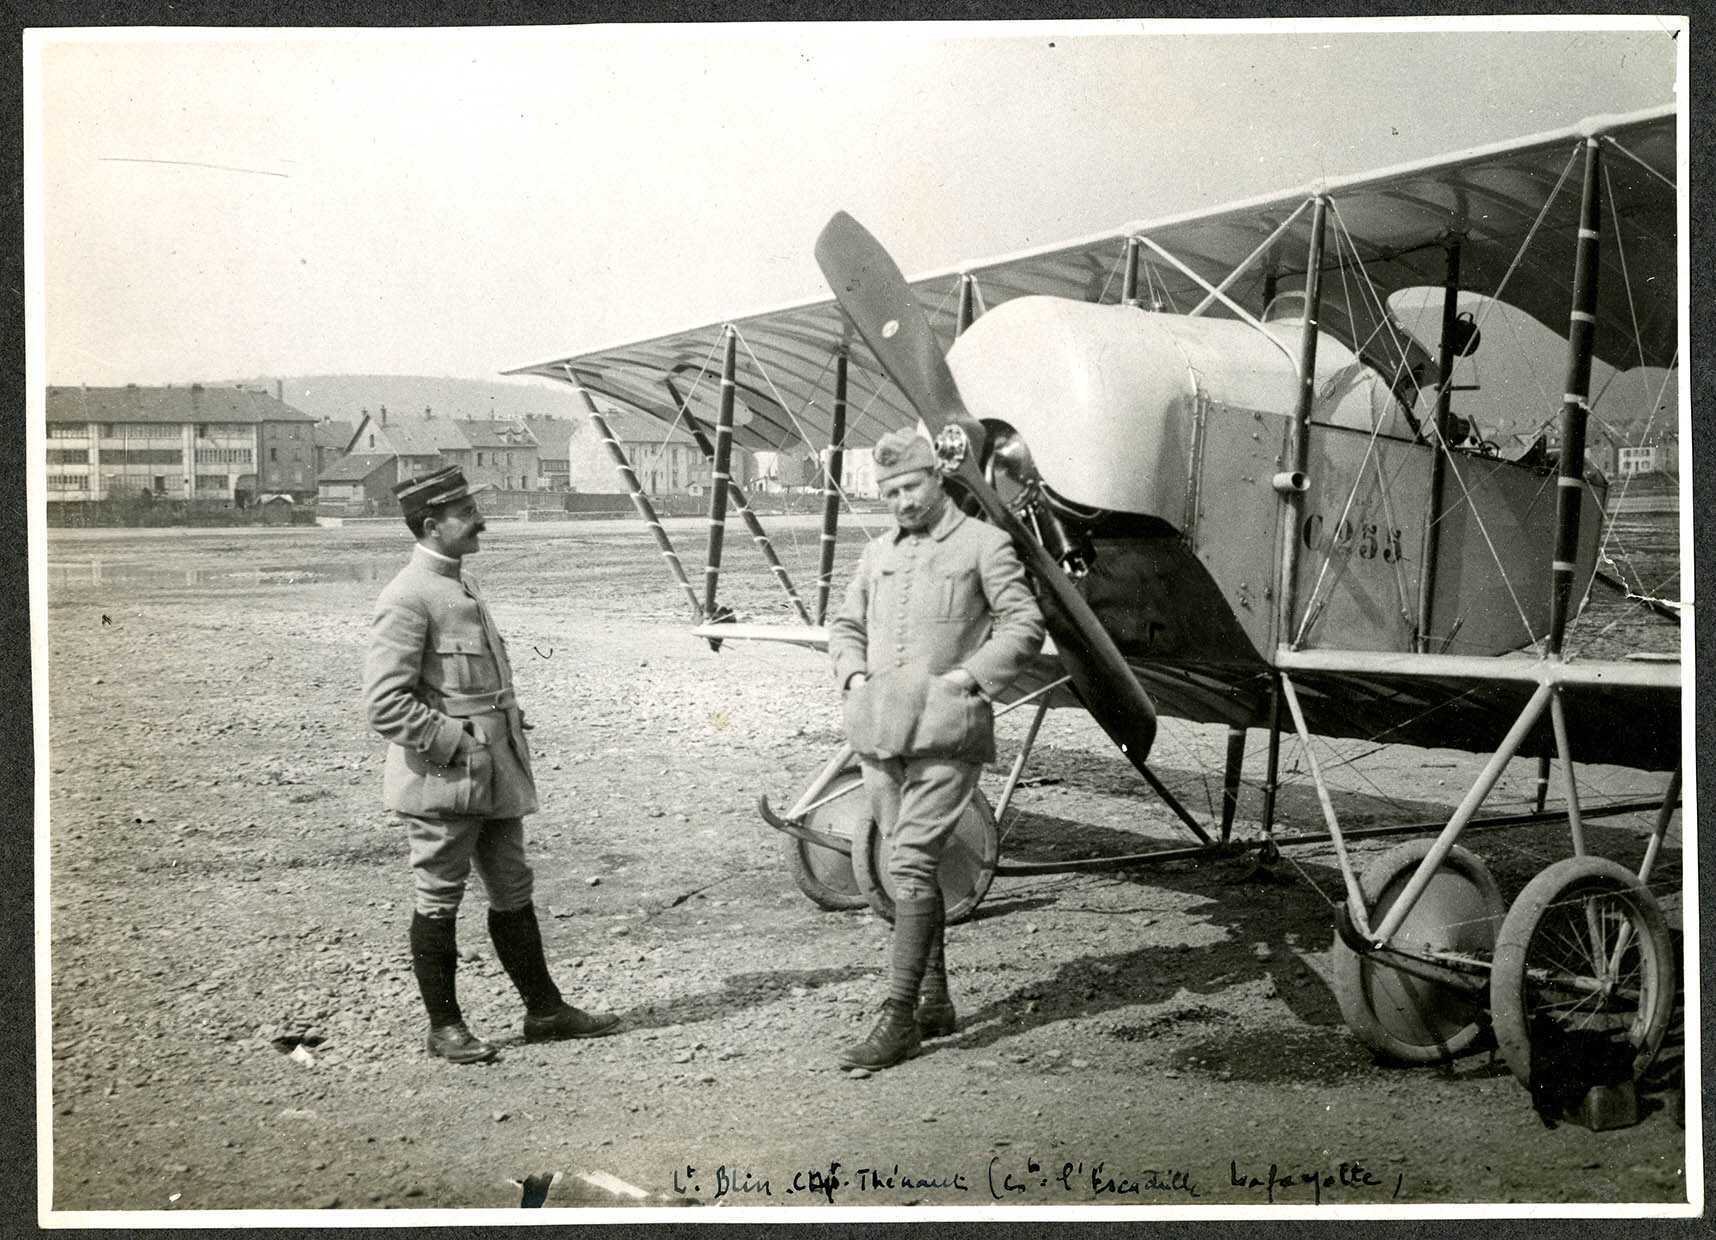 Belfort, Centre aéronautique militaire, Champ-de-Mars (Parc-à-Ballons) un avion de reconnaissance français, le 15 avril 1915.